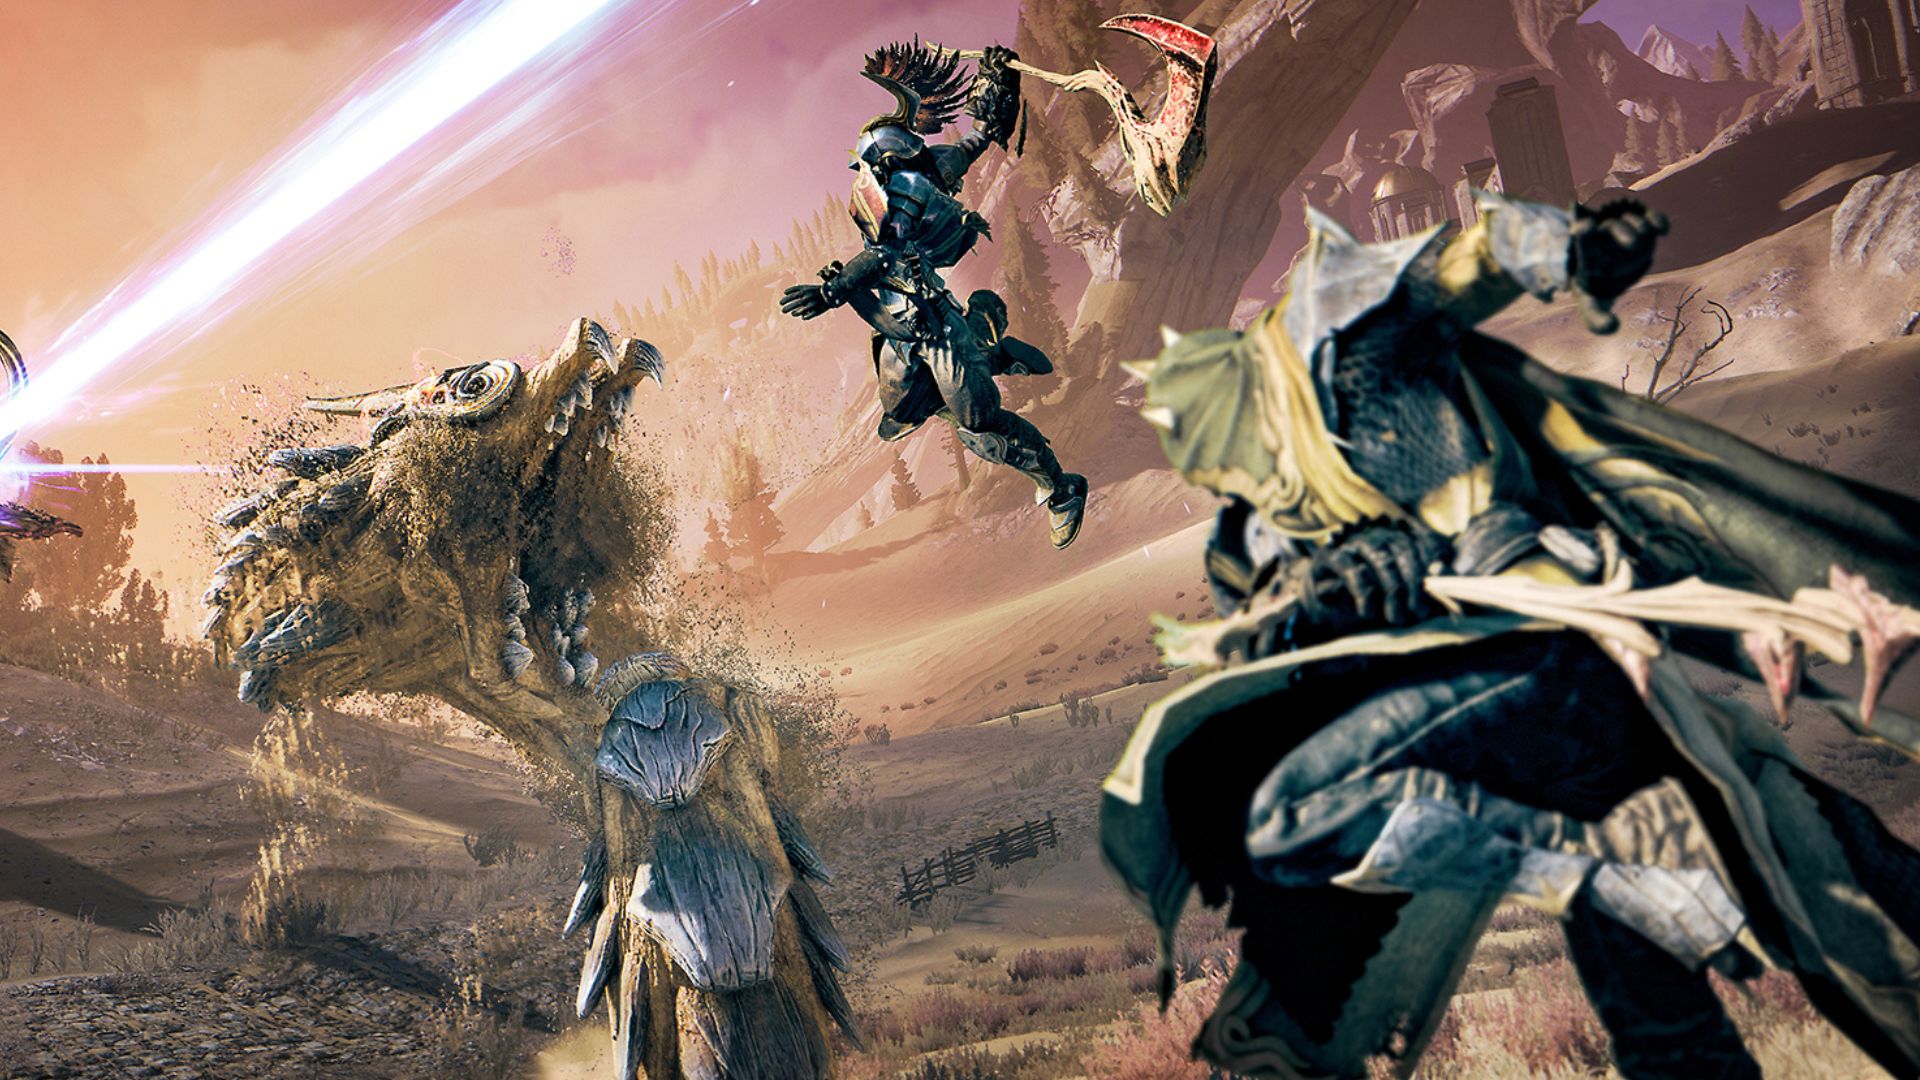 Atlas Fallen Reign of Sand ücretsiz güncellemesi: Kumlu bir ortamda savaşa hazırlanan bazı şövalyeler